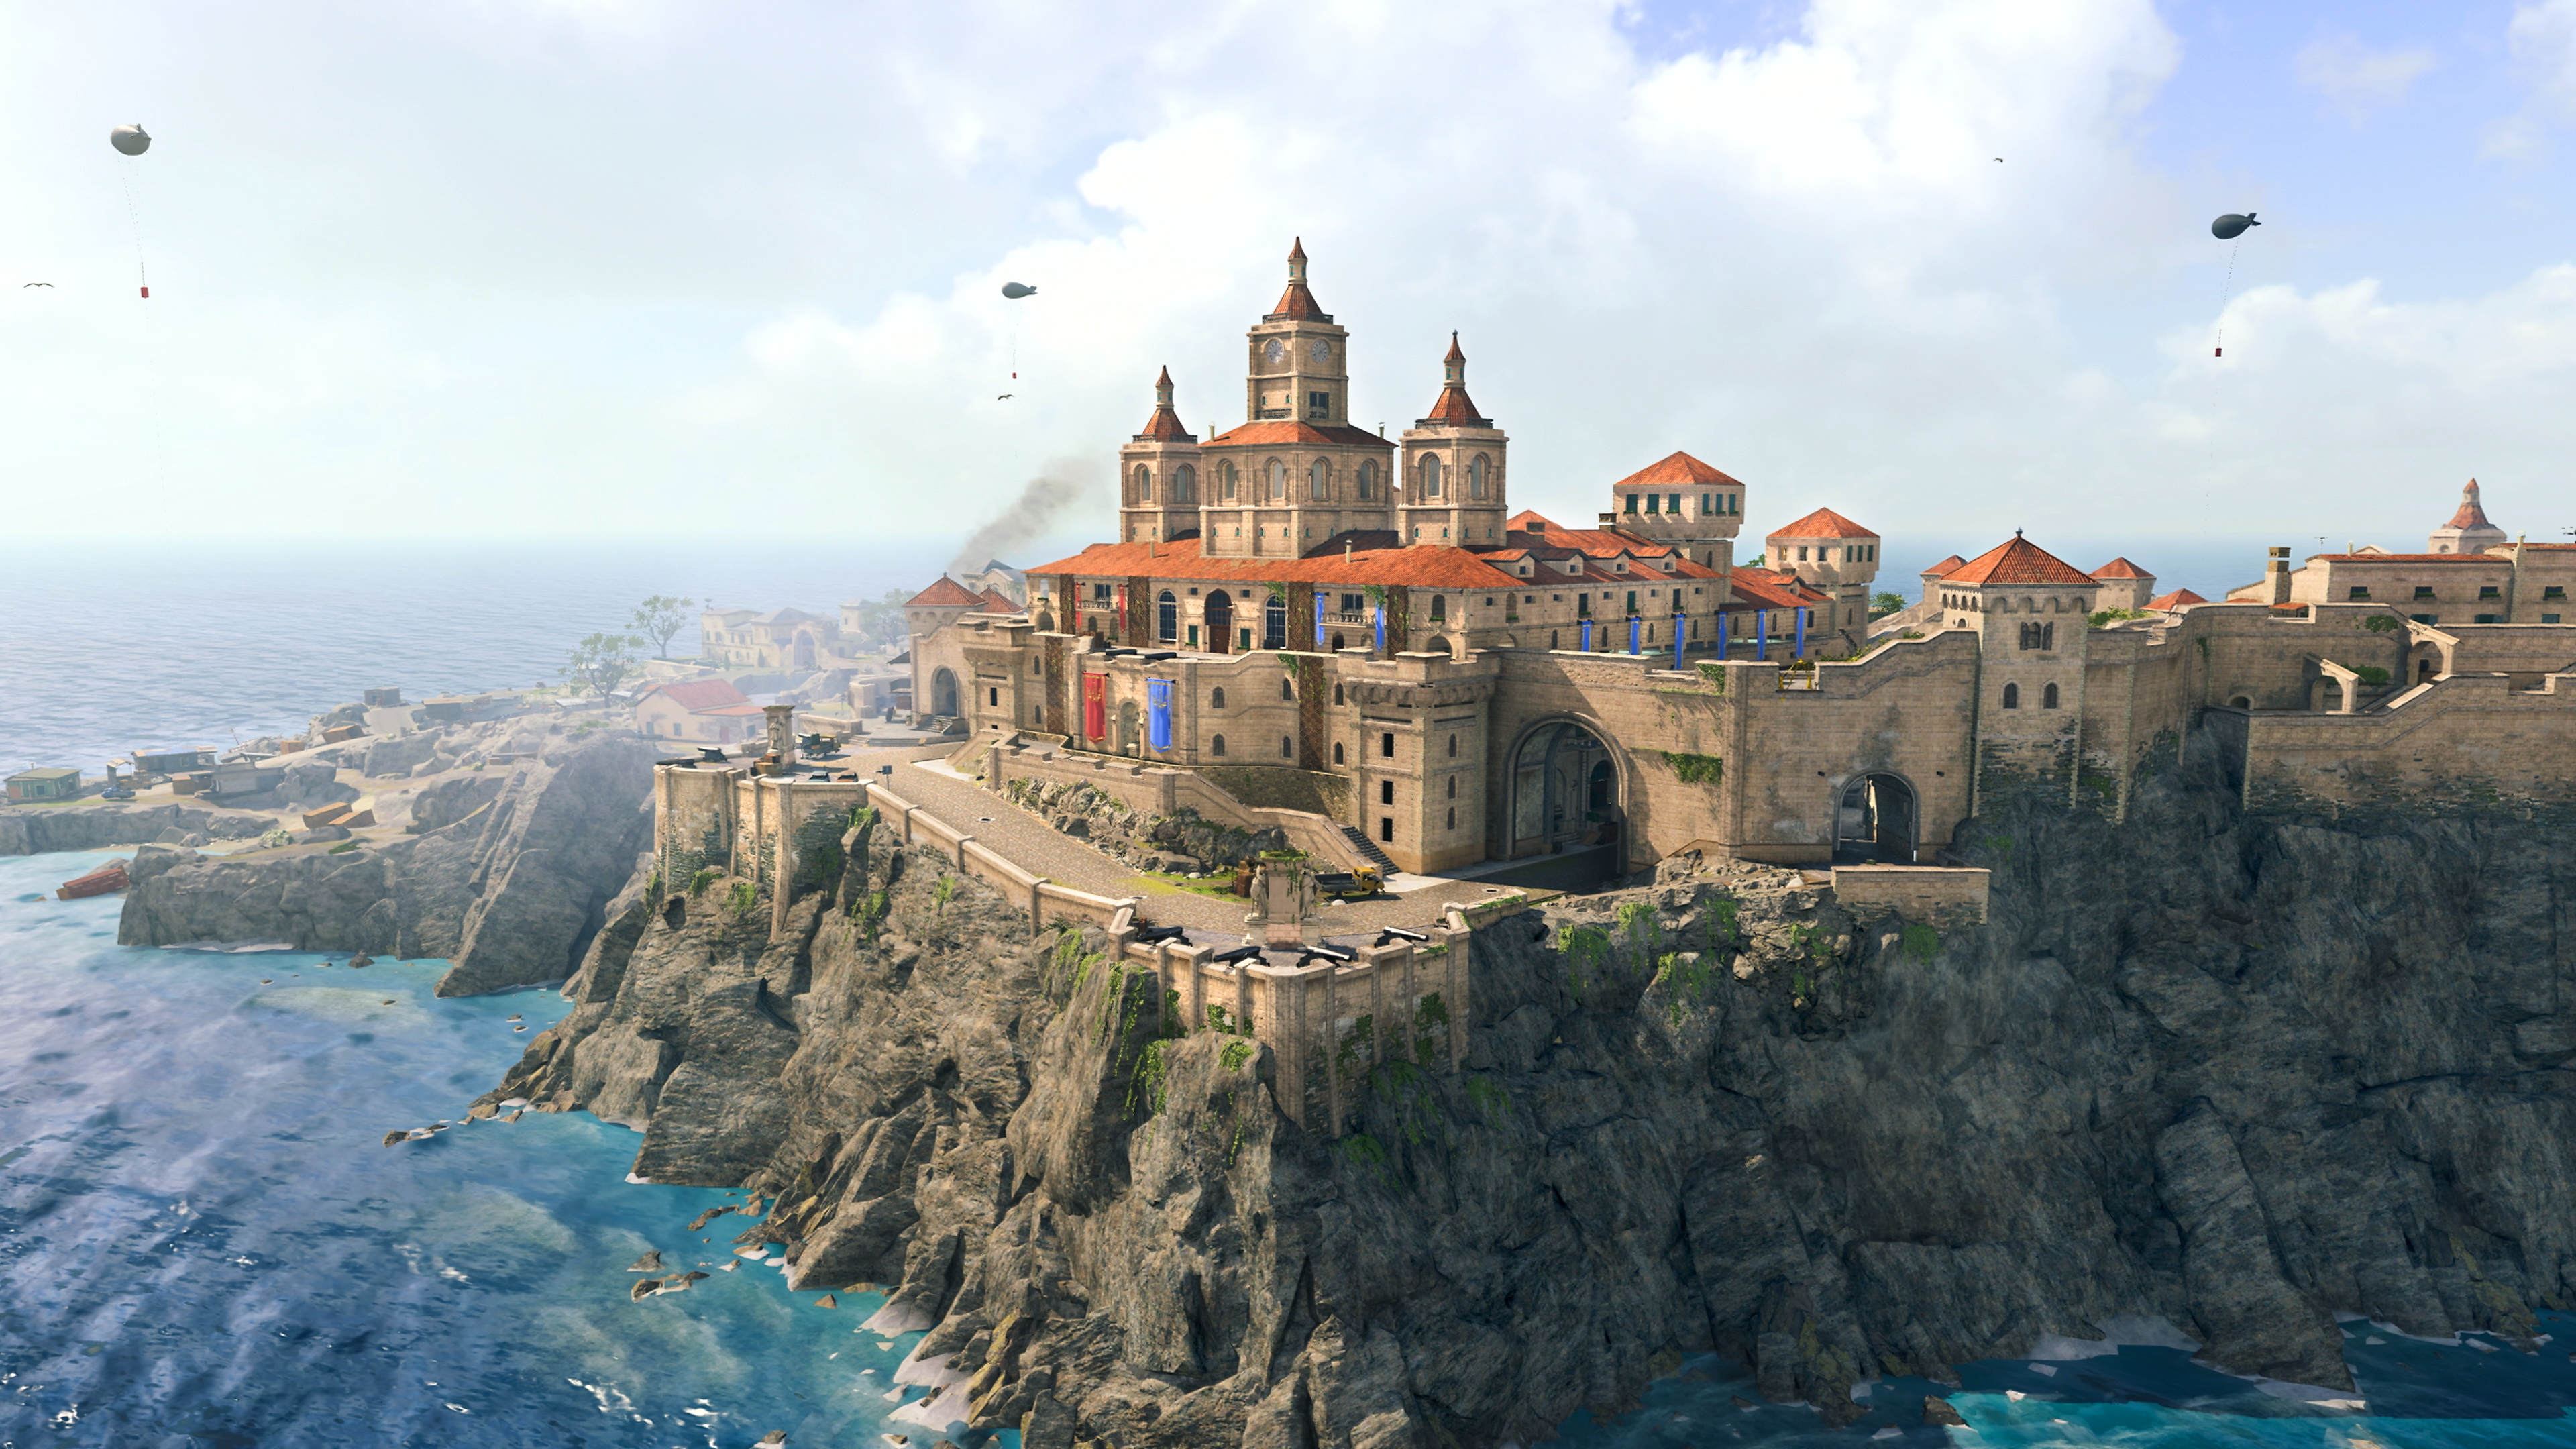 A Call of Duty Warzone képernyőképe, rajta az új Fortune's Keep pálya – nagy épület az óceán melletti sziklánál